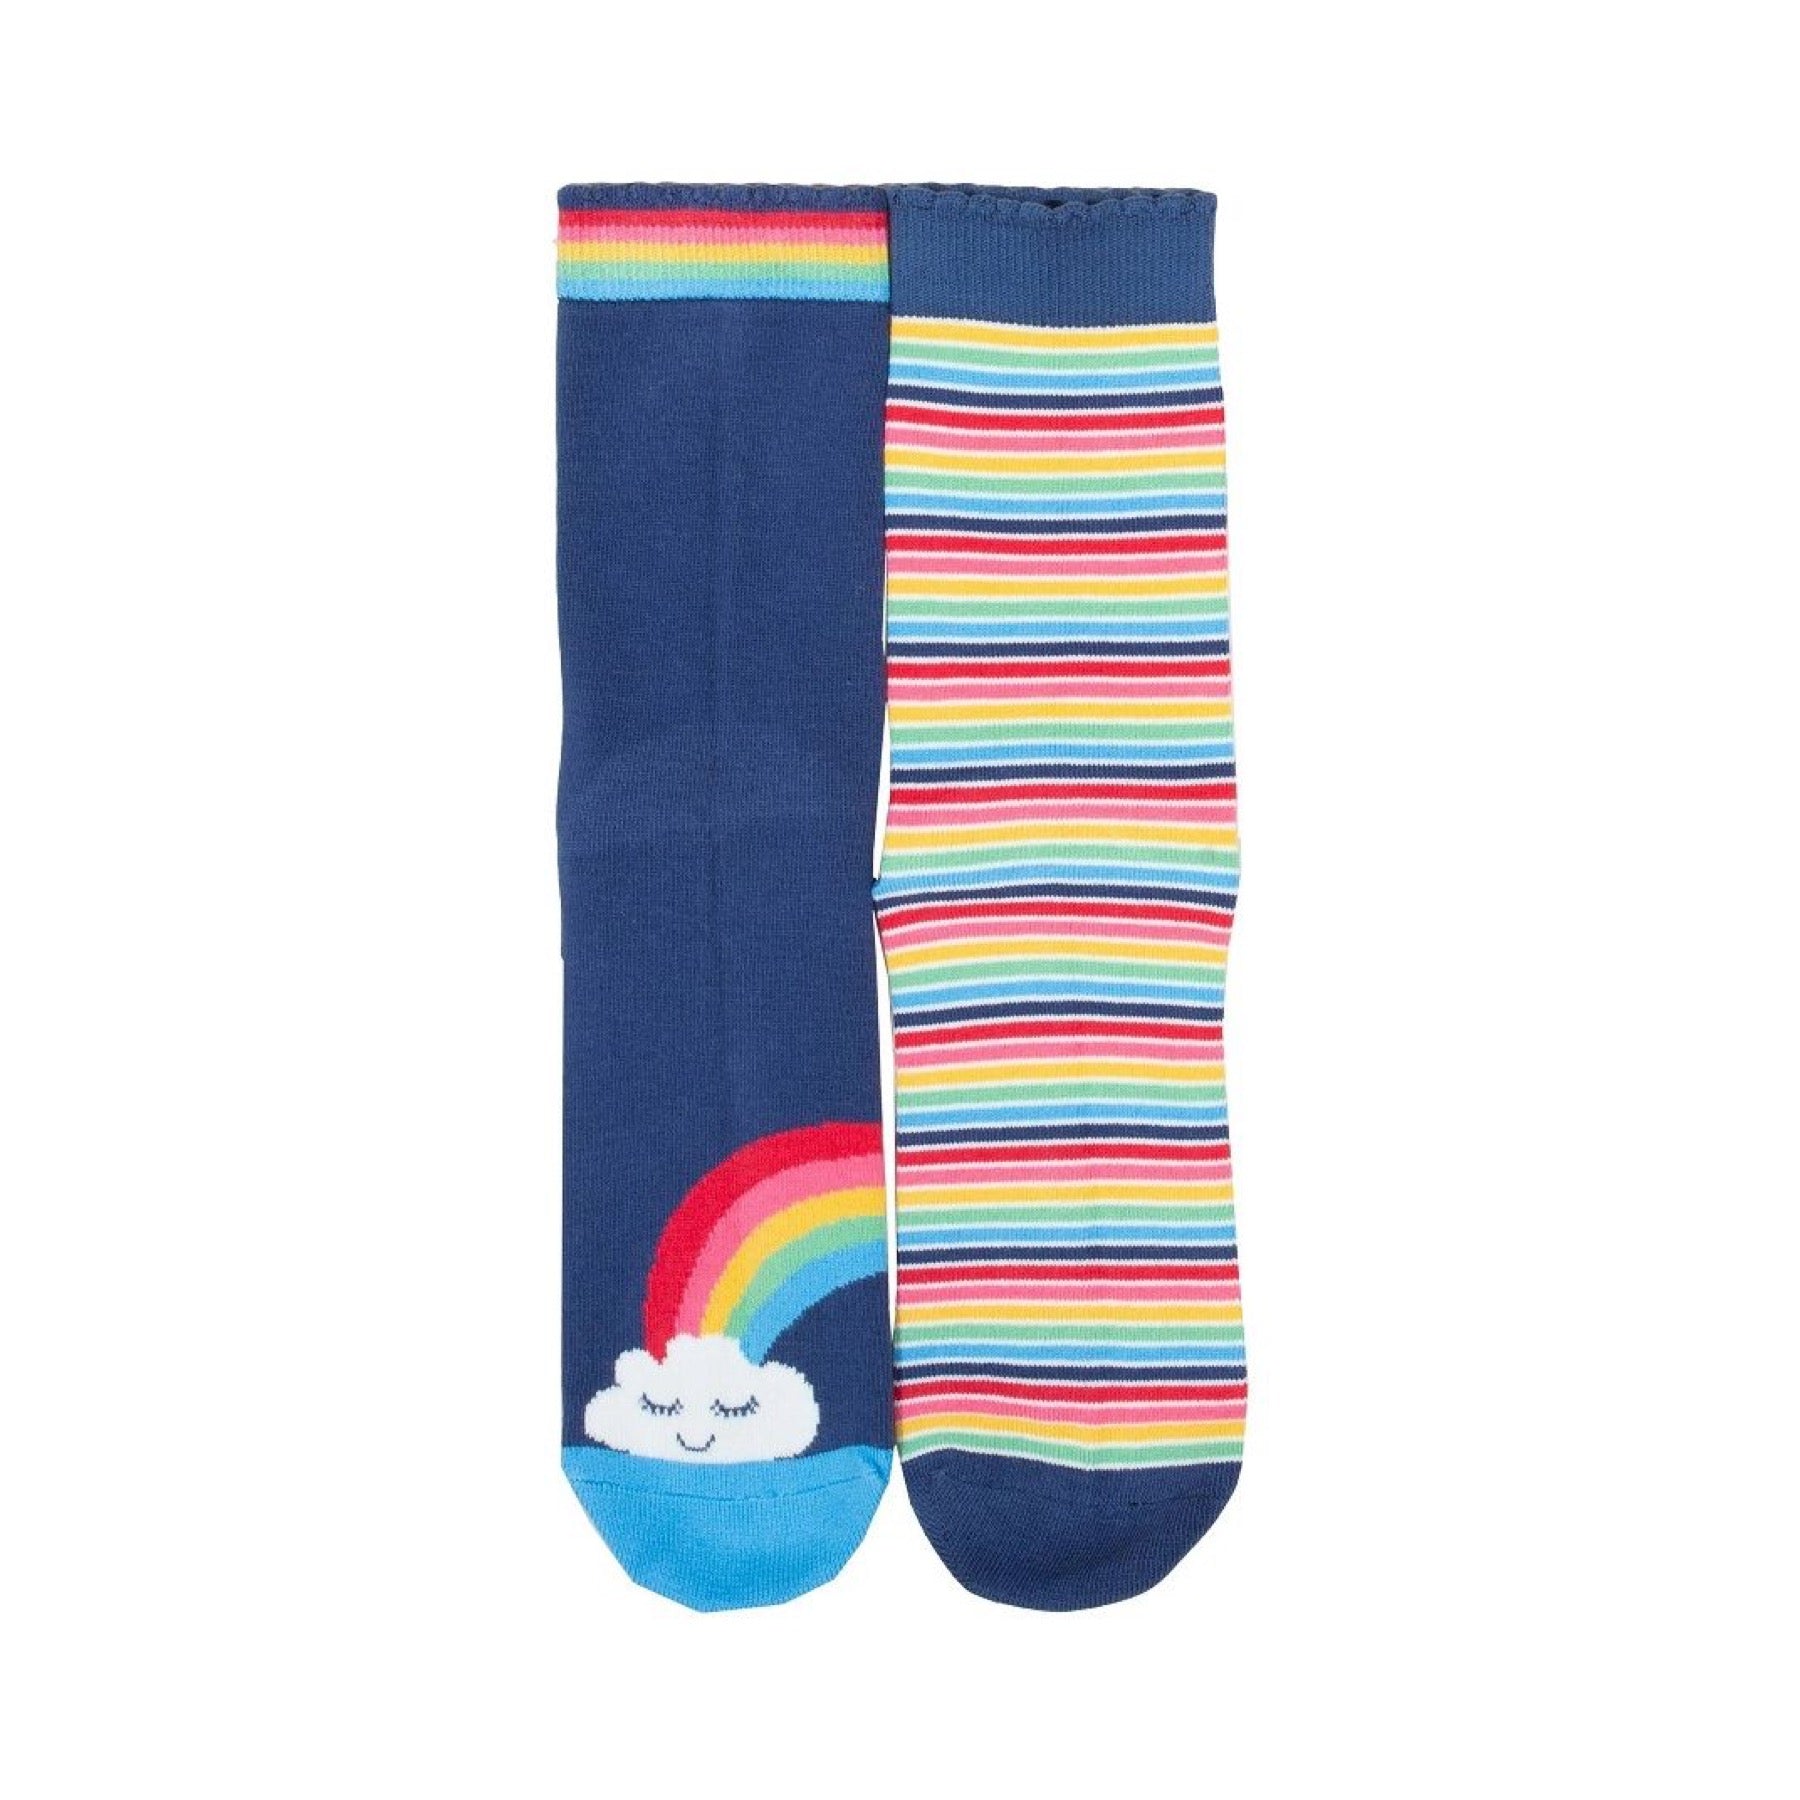 Kite Socks Rainbow Stripe (Adult)